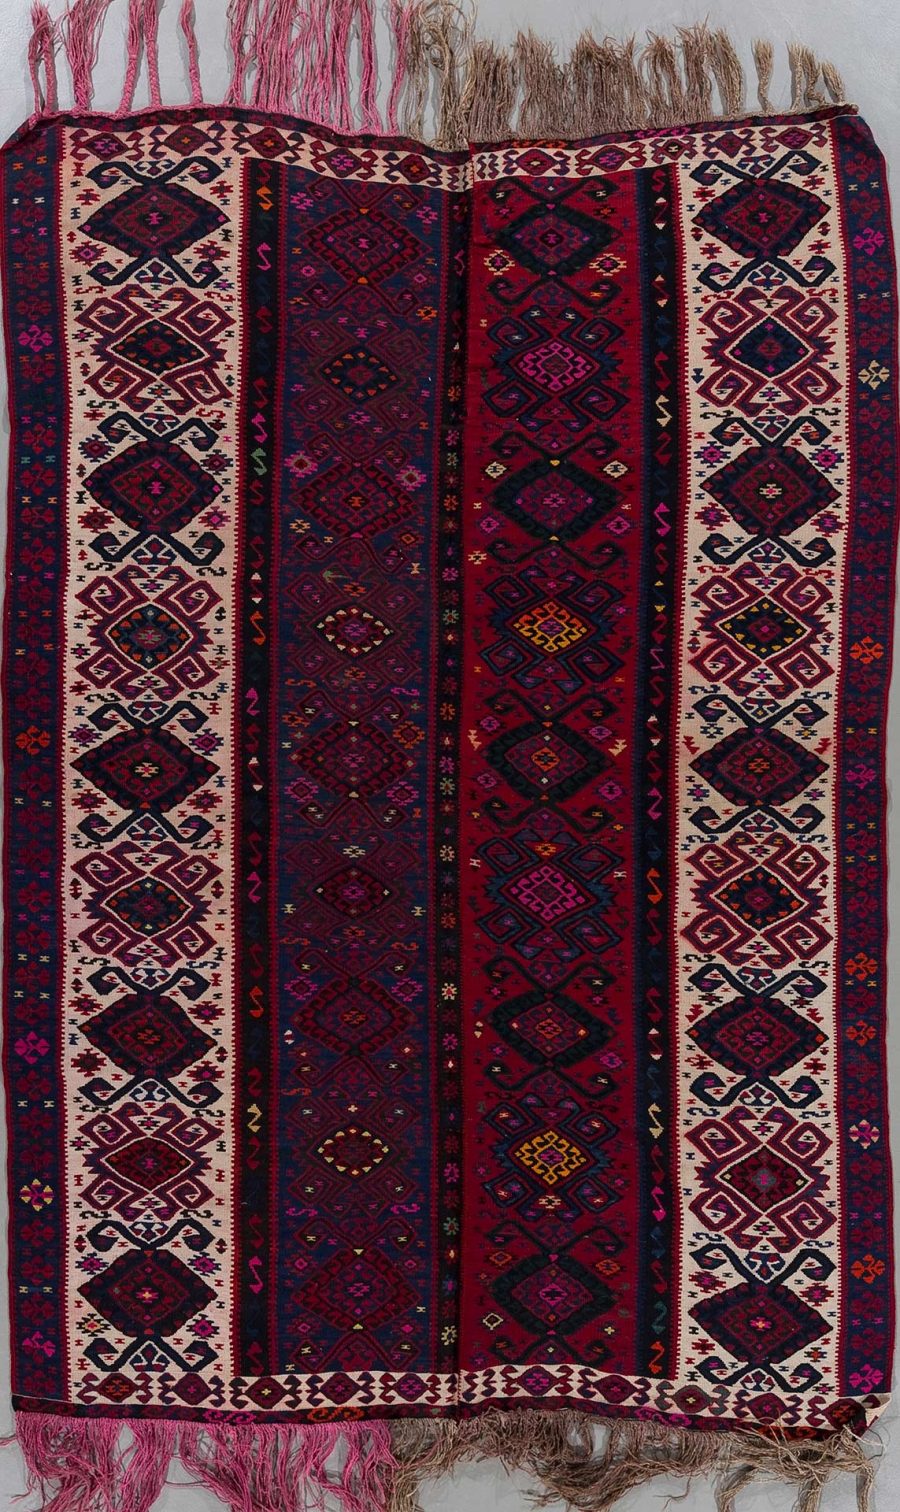 Traditioneller handgewebter Teppich mit komplexen Mustern in Dunkelrot, Blau und Beige, dekoriert mit geometrischen und diamantähnlichen Formen, versehen mit Fransen an beiden Enden.